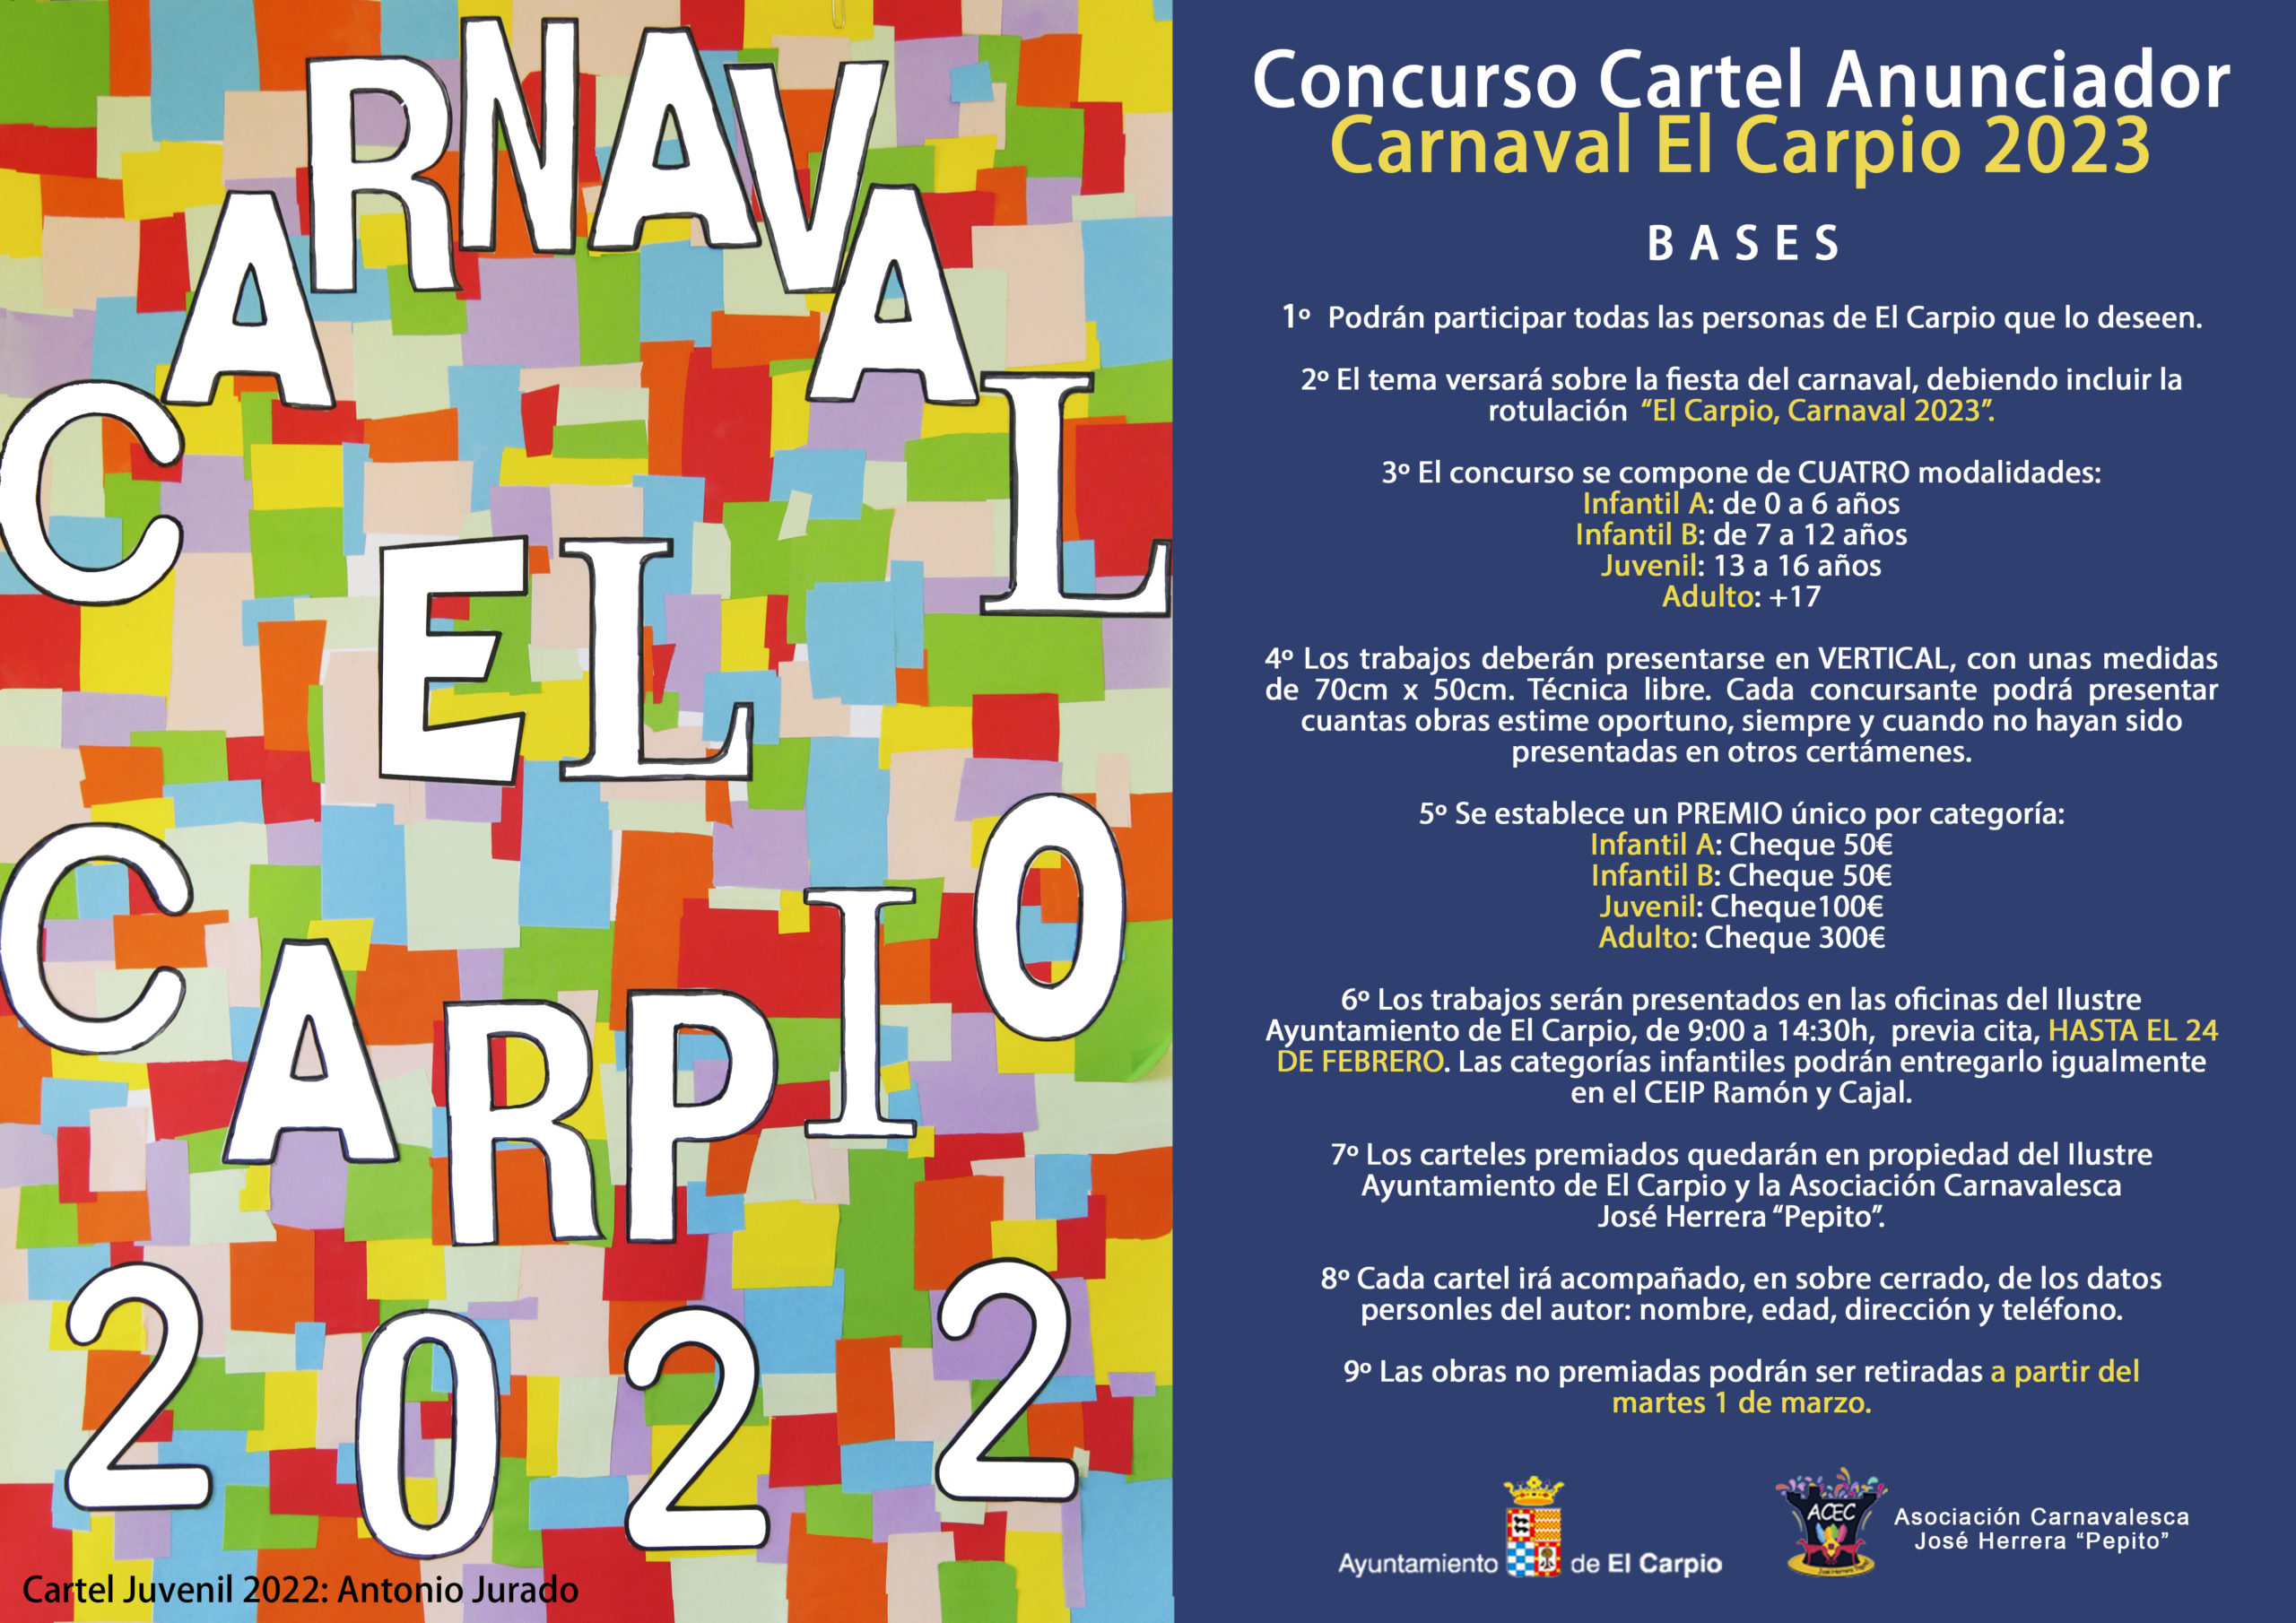 CONCURSO CARTEL ANUNCIADOR CARNAVAL EL CARPIO 2023